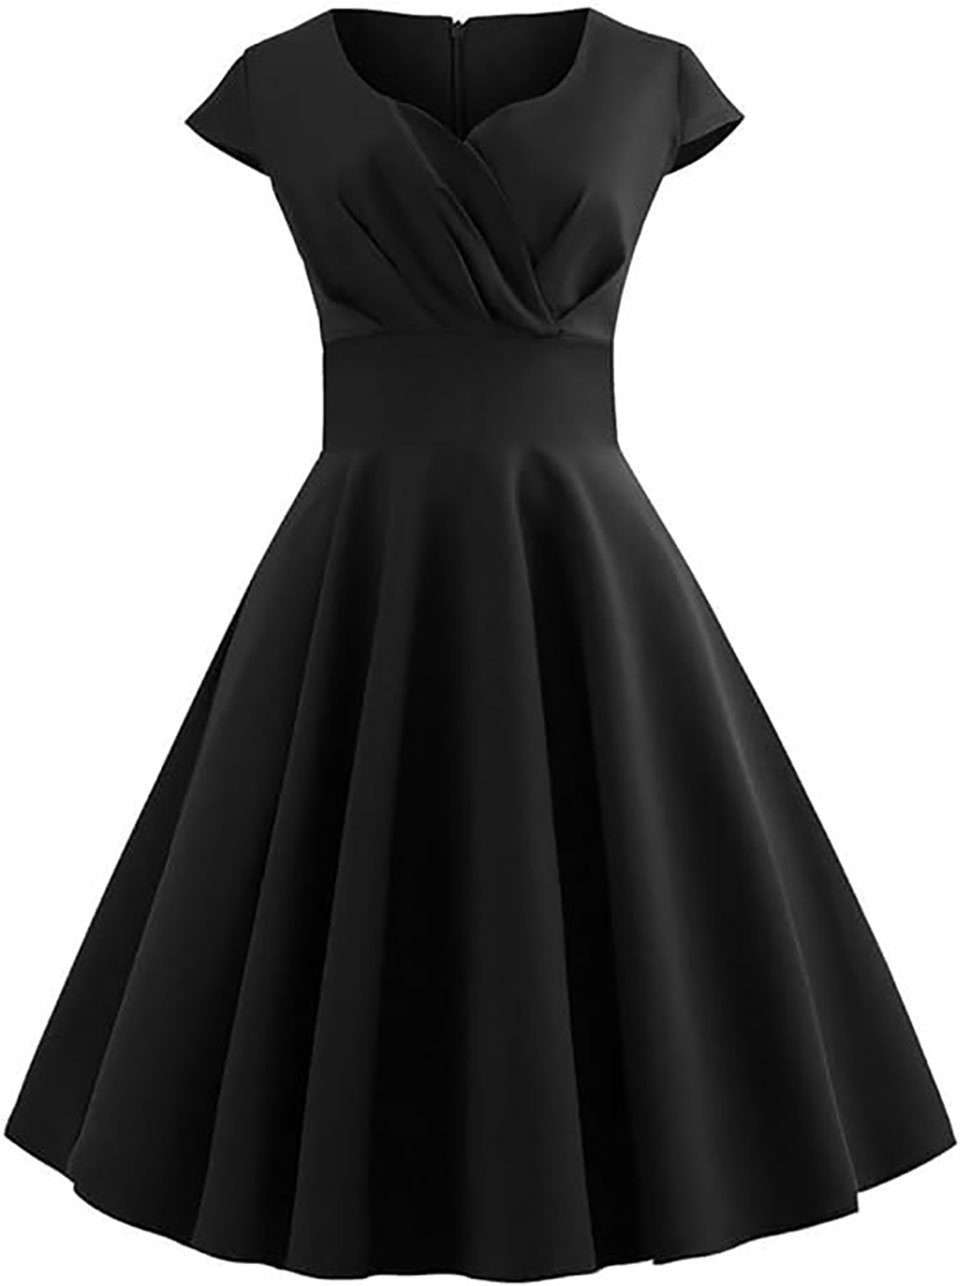 Юбка А-силуэта, винтажное коктейльное платье в стиле ретро 1950-х годов